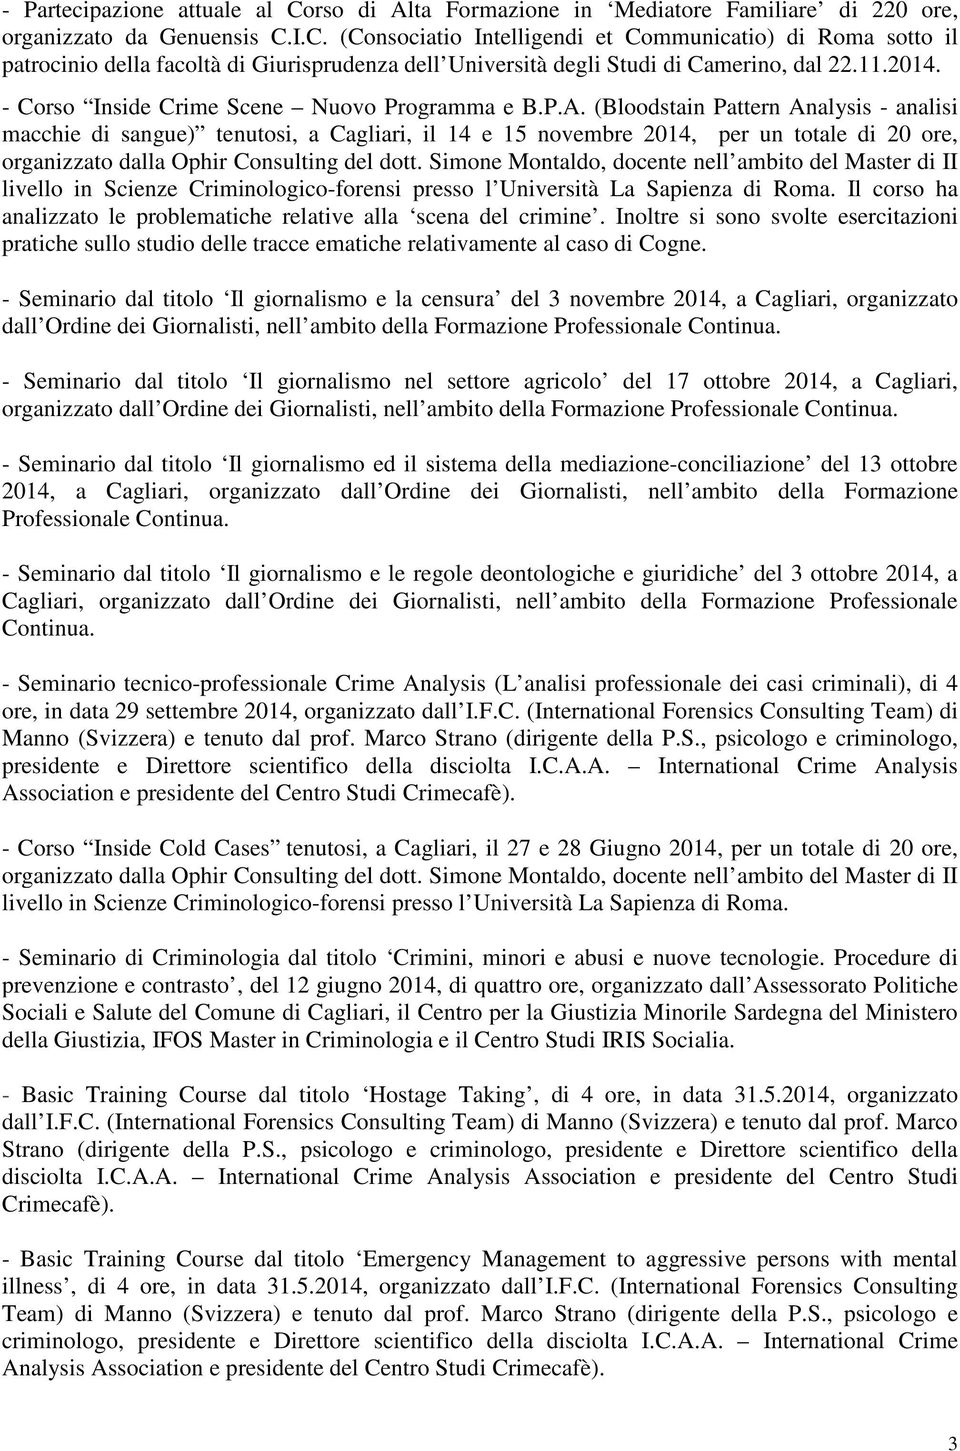 (Bloodstain Pattern Analysis - analisi macchie di sangue) tenutosi, a Cagliari, il 14 e 15 novembre 2014, per un totale di 20 ore, organizzato dalla Ophir Consulting del dott.